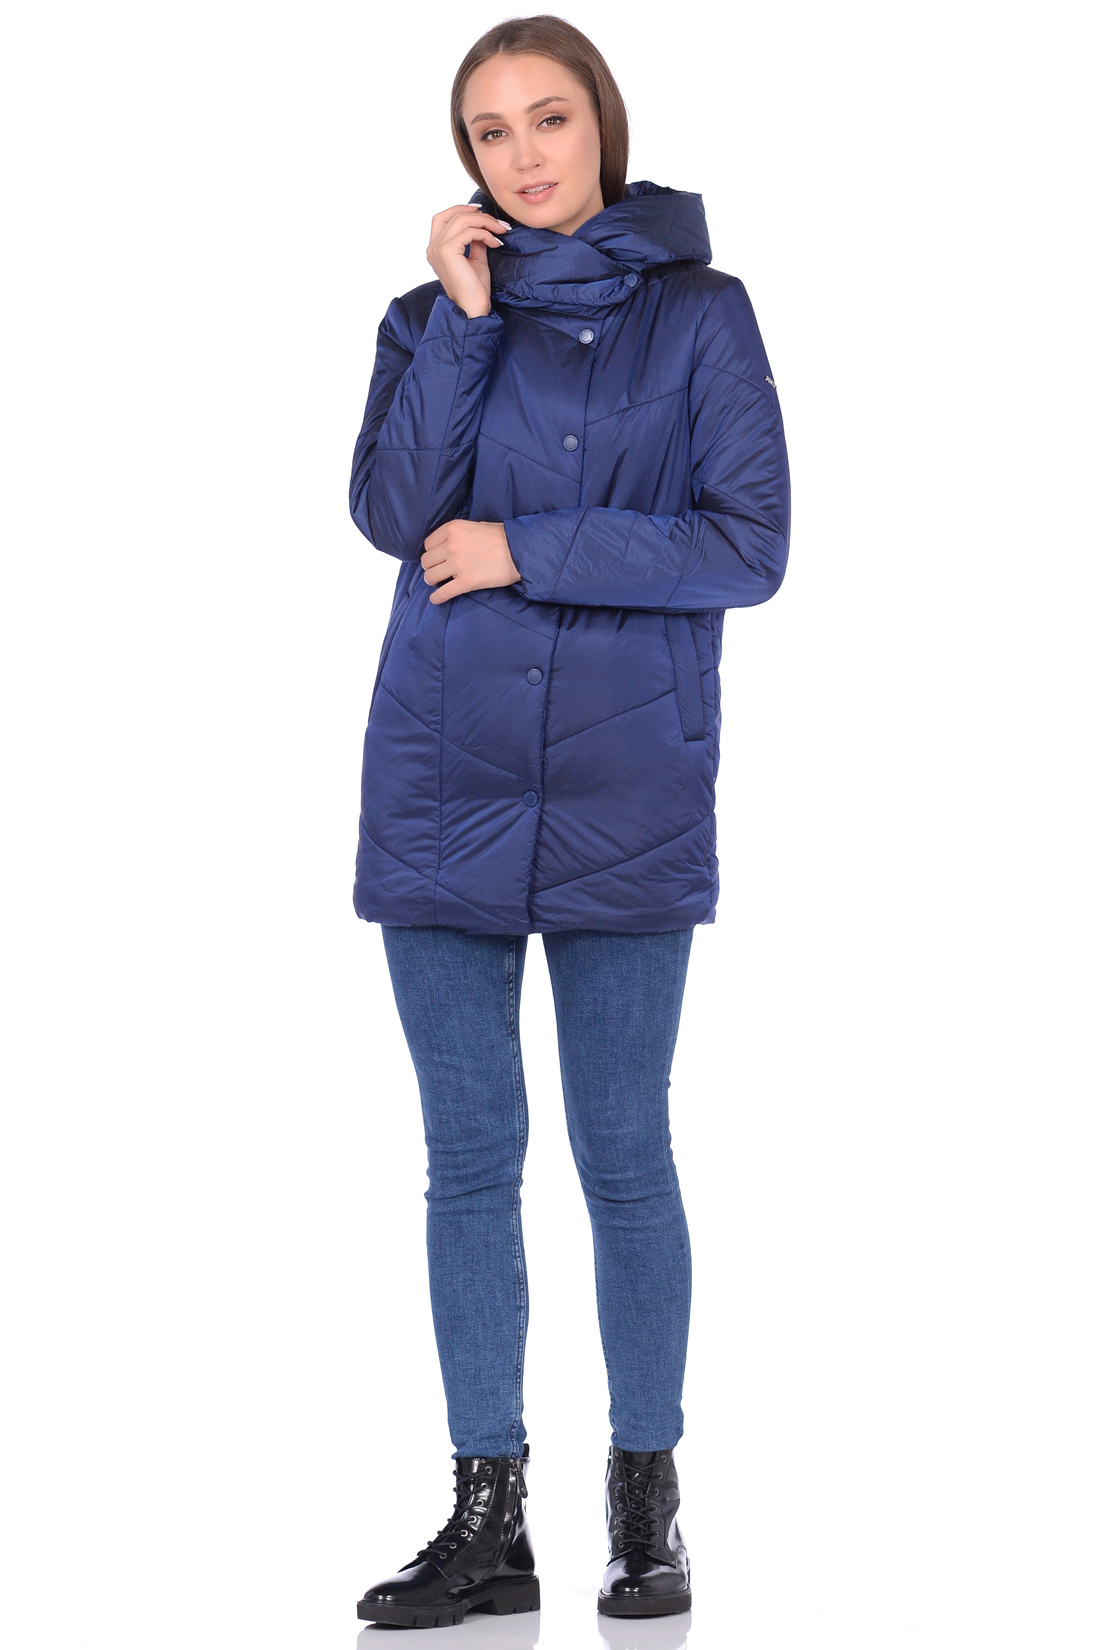 Куртка с капюшоном и асимметричной застёжкой (арт. baon B038524), размер L, цвет синий Куртка с капюшоном и асимметричной застёжкой (арт. baon B038524) - фото 5